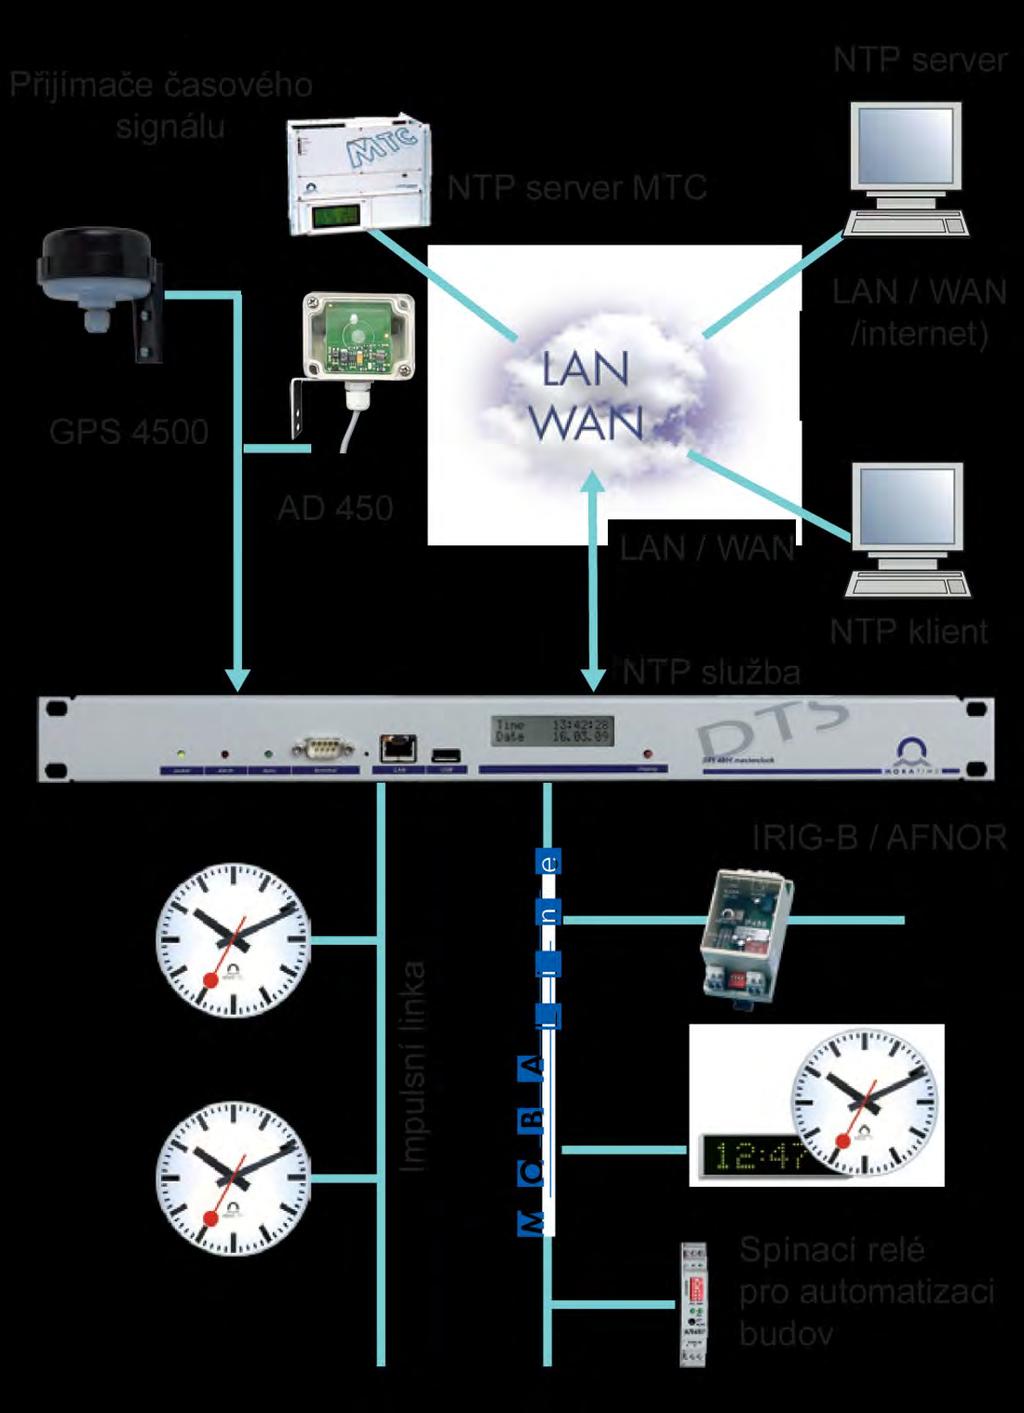 DTS 4802 masterclock jako NTP server a hlavní hodiny DTS 4802 masterclock jako hlavní hodiny synchronizované NTP serverem DTS 4802 masterclock jako NTP časový server synchronizovaný časovým signálem